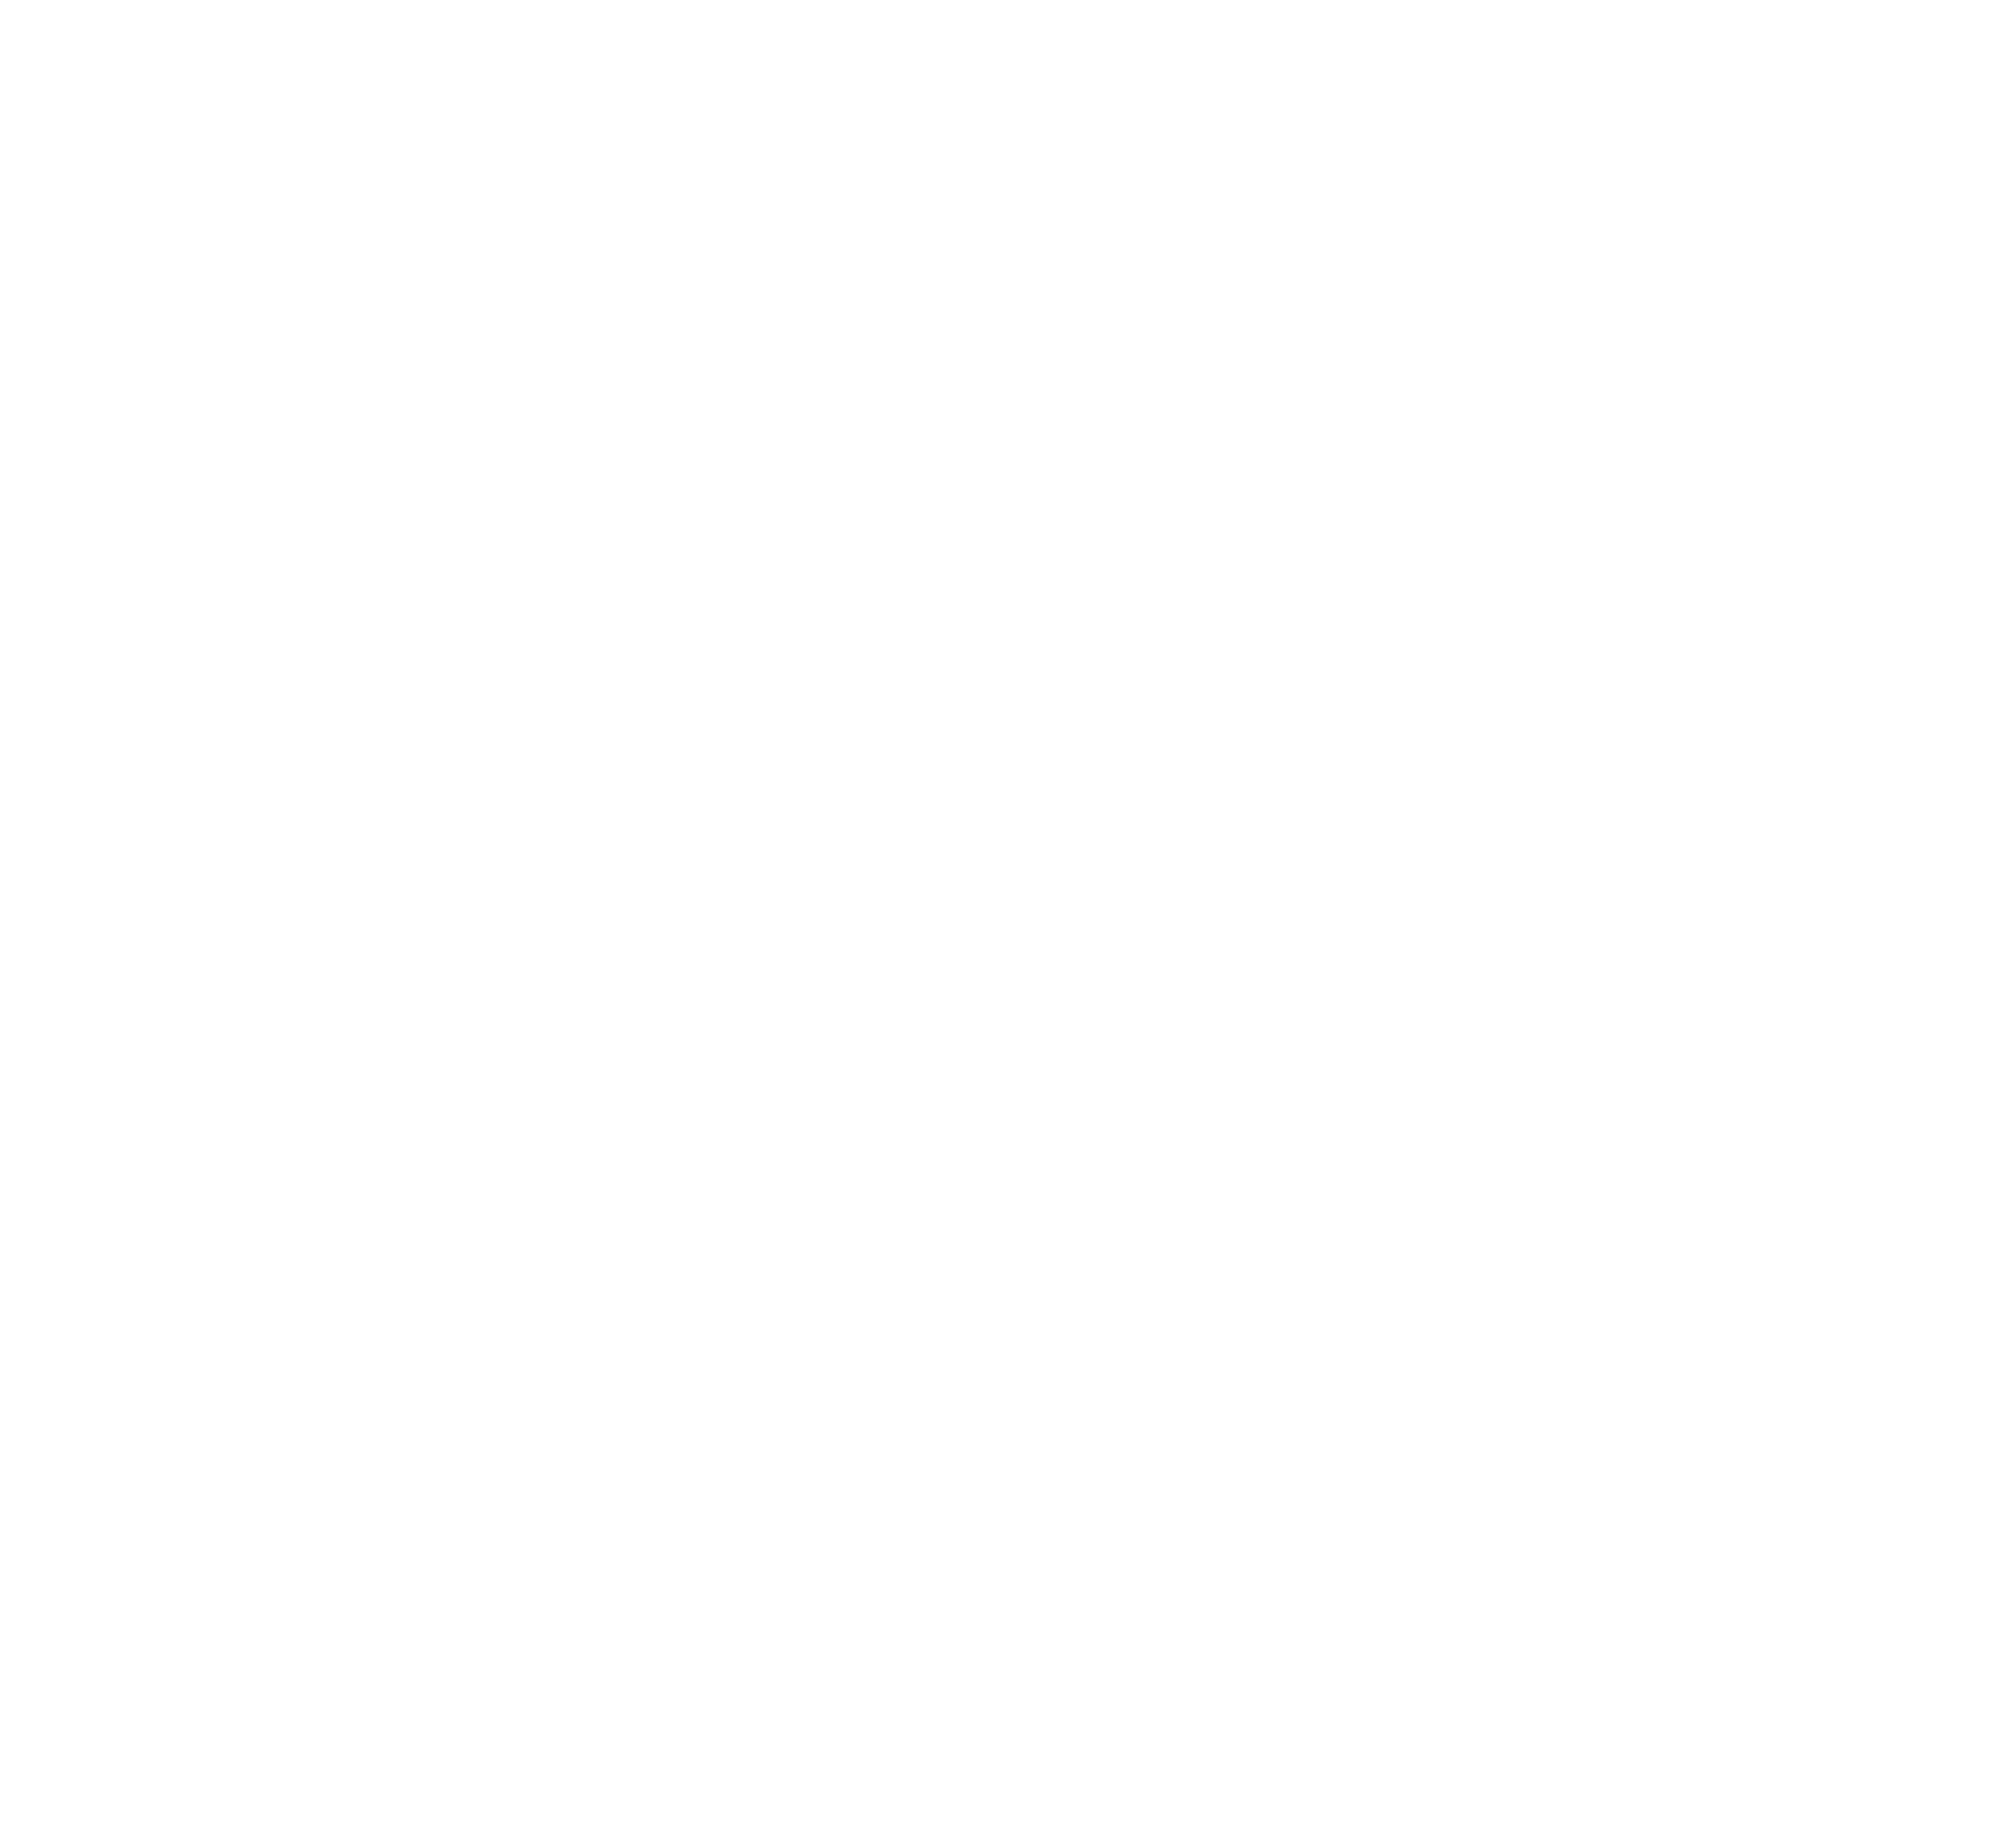 Unsere Partnerschaft mit Caparol